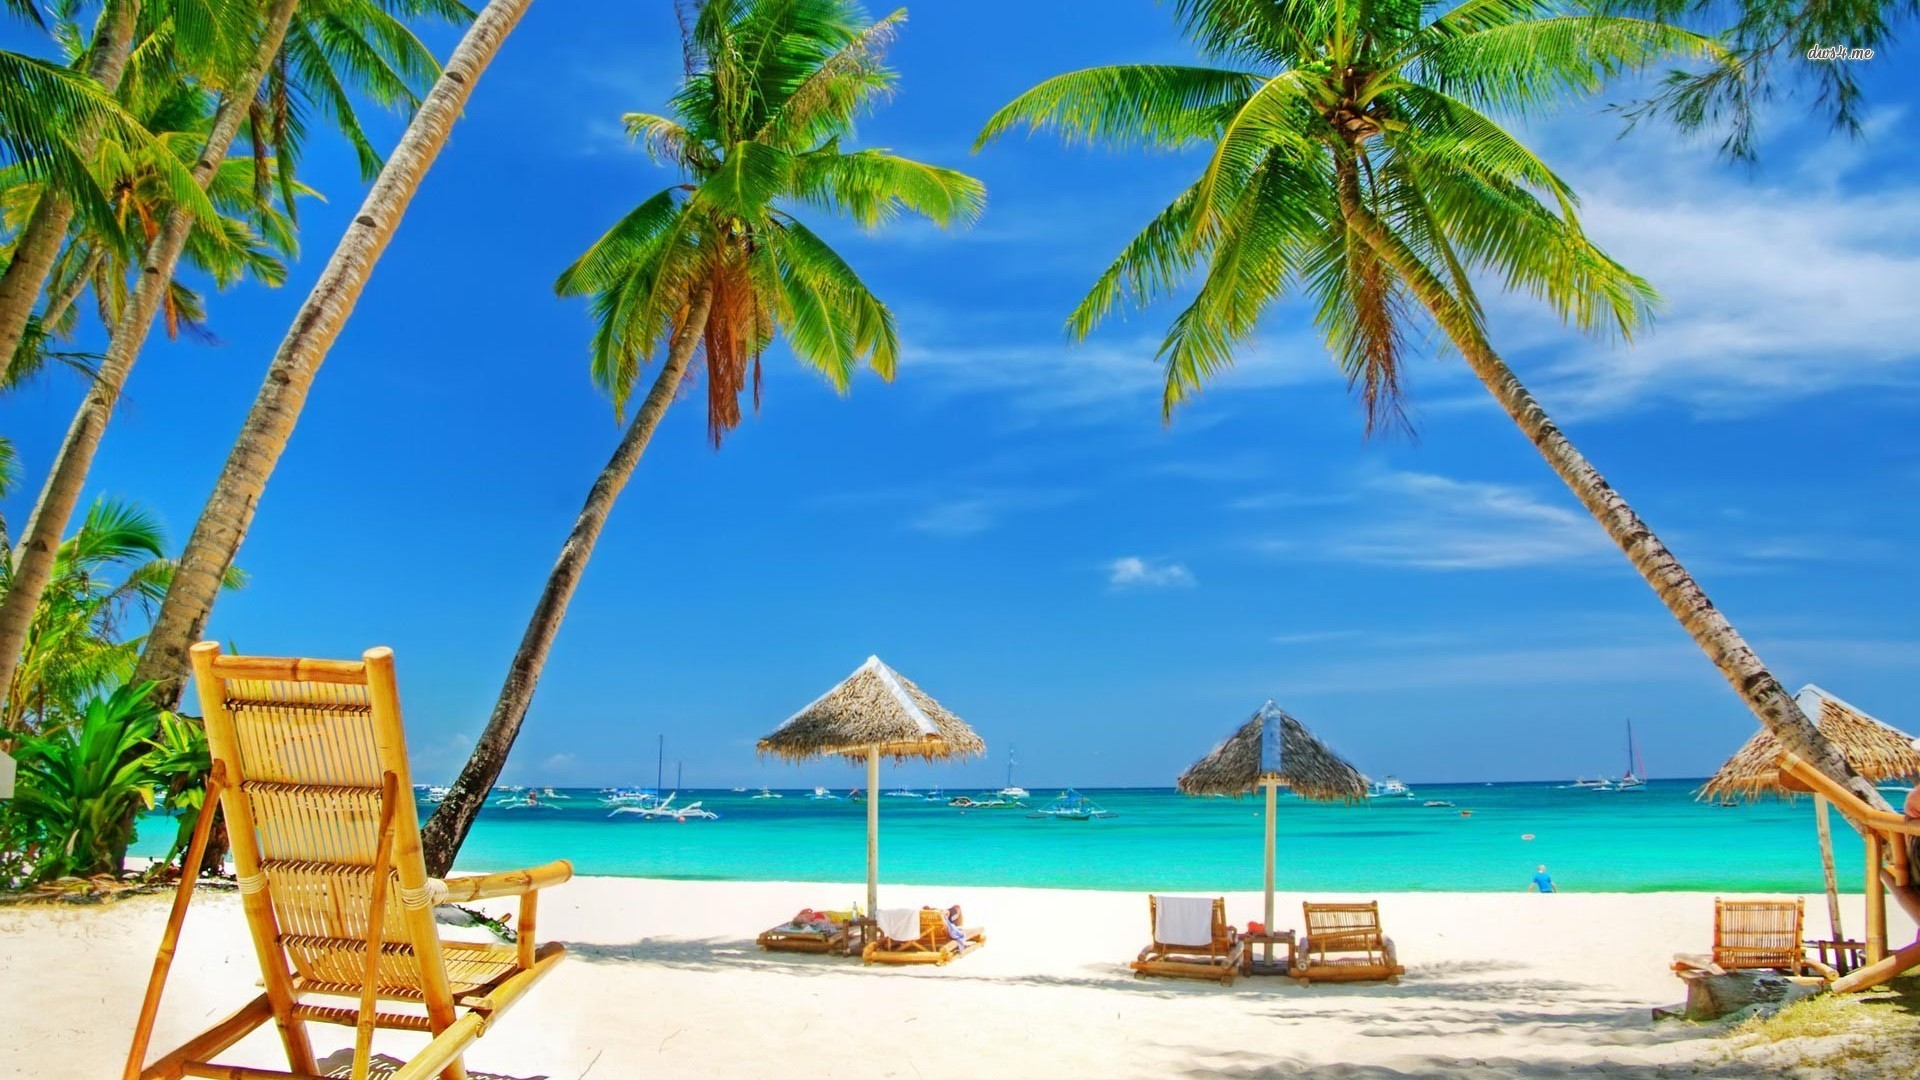 goa beach wallpaper,tropics,vacation,caribbean,tree,palm tree